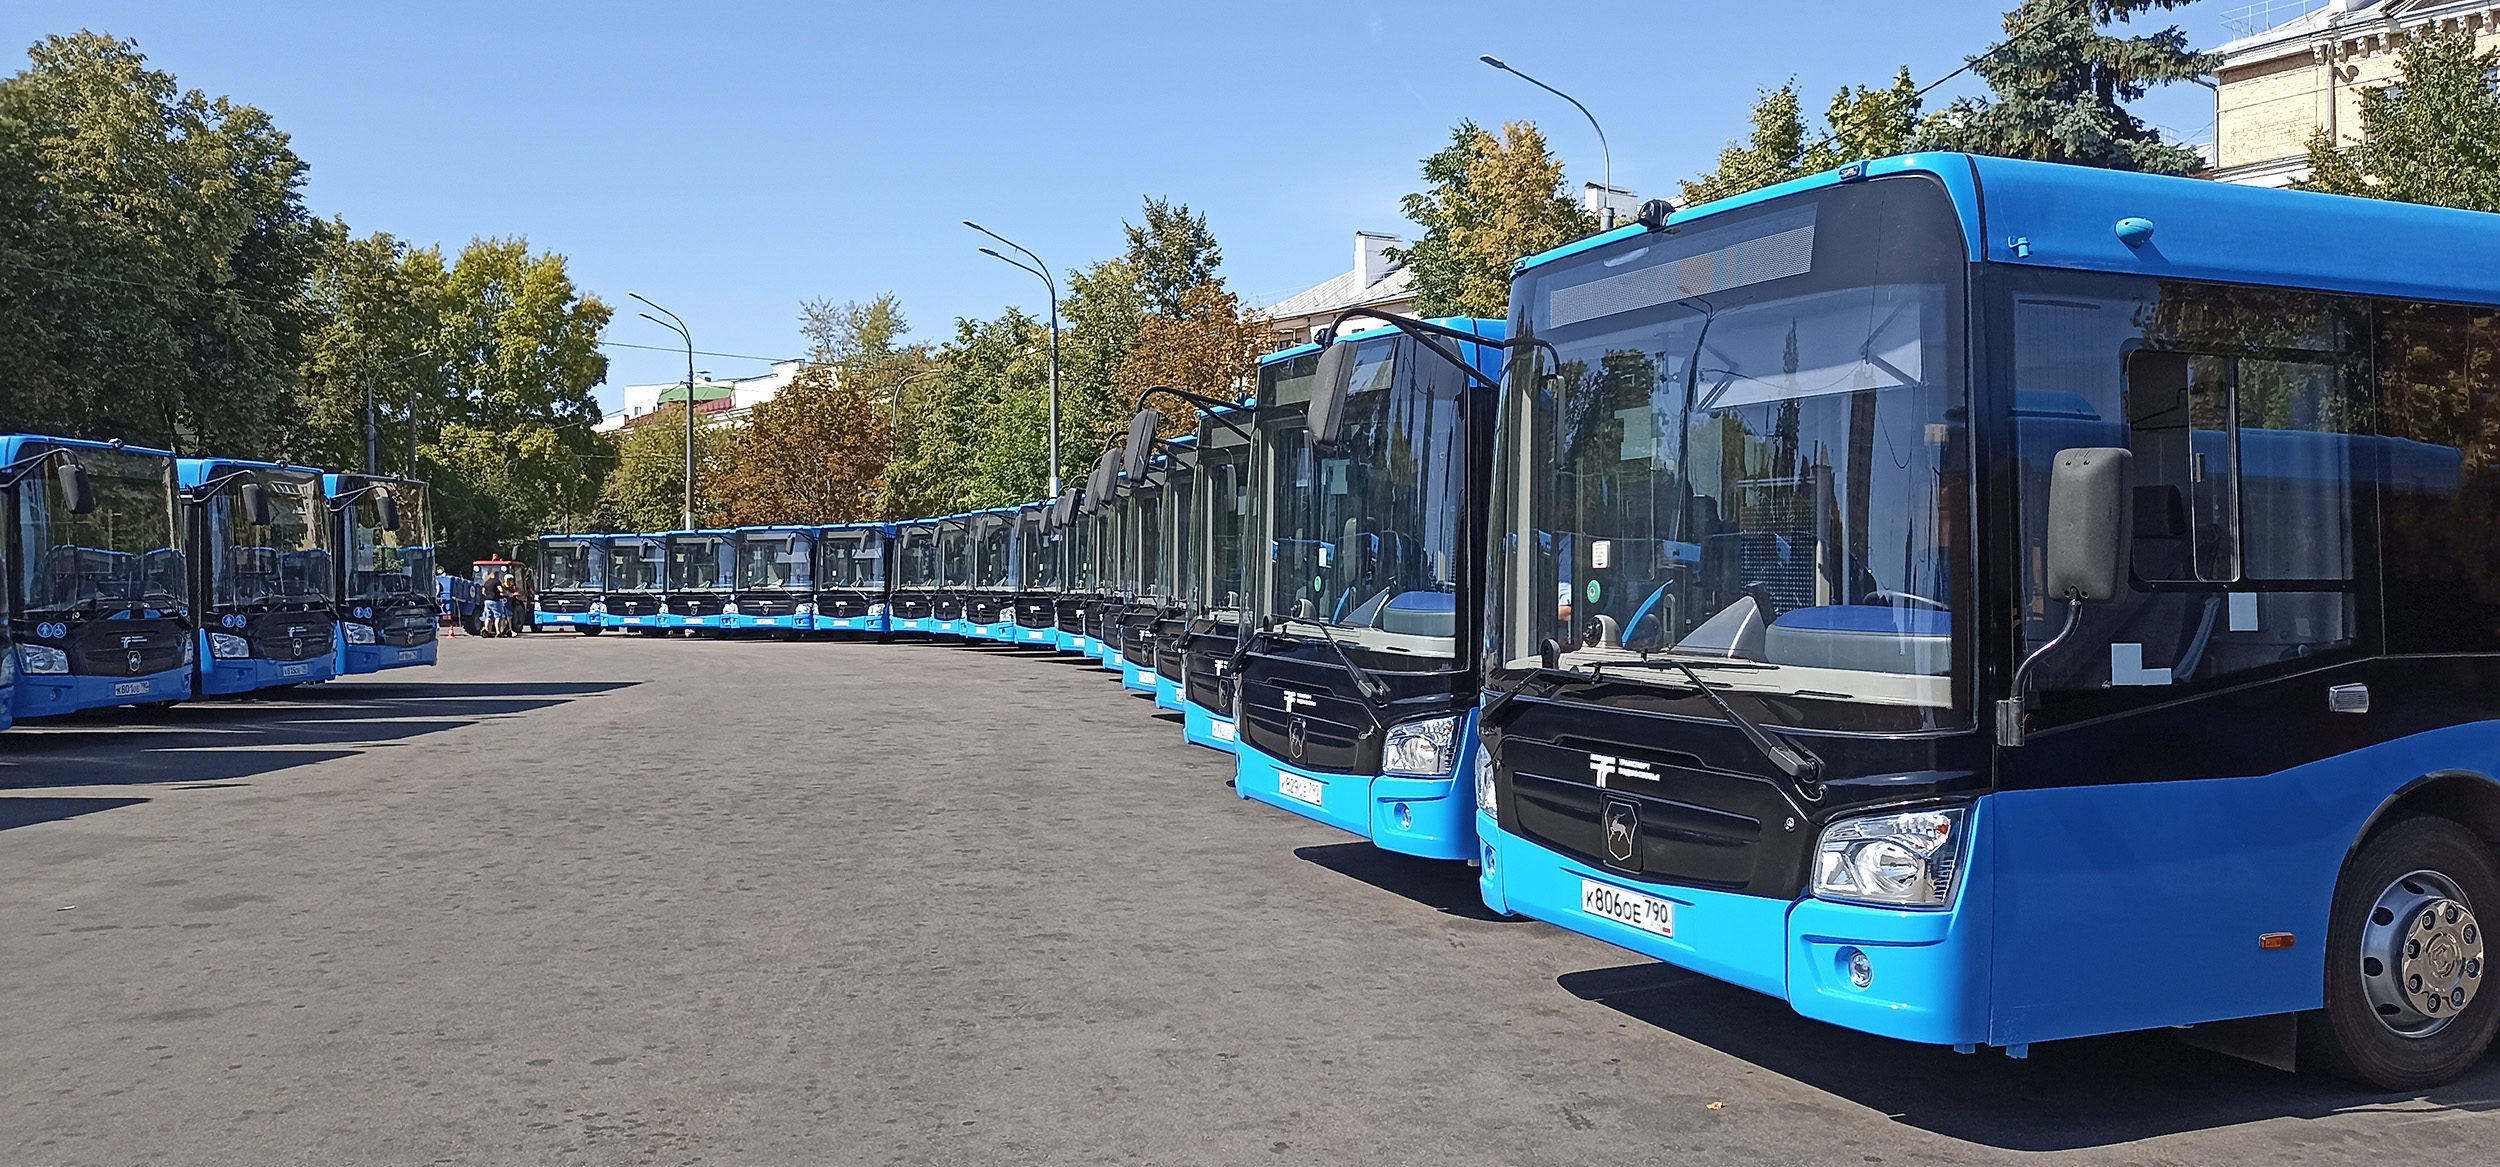 Продажи новых автобусов в России взлетели на 11%